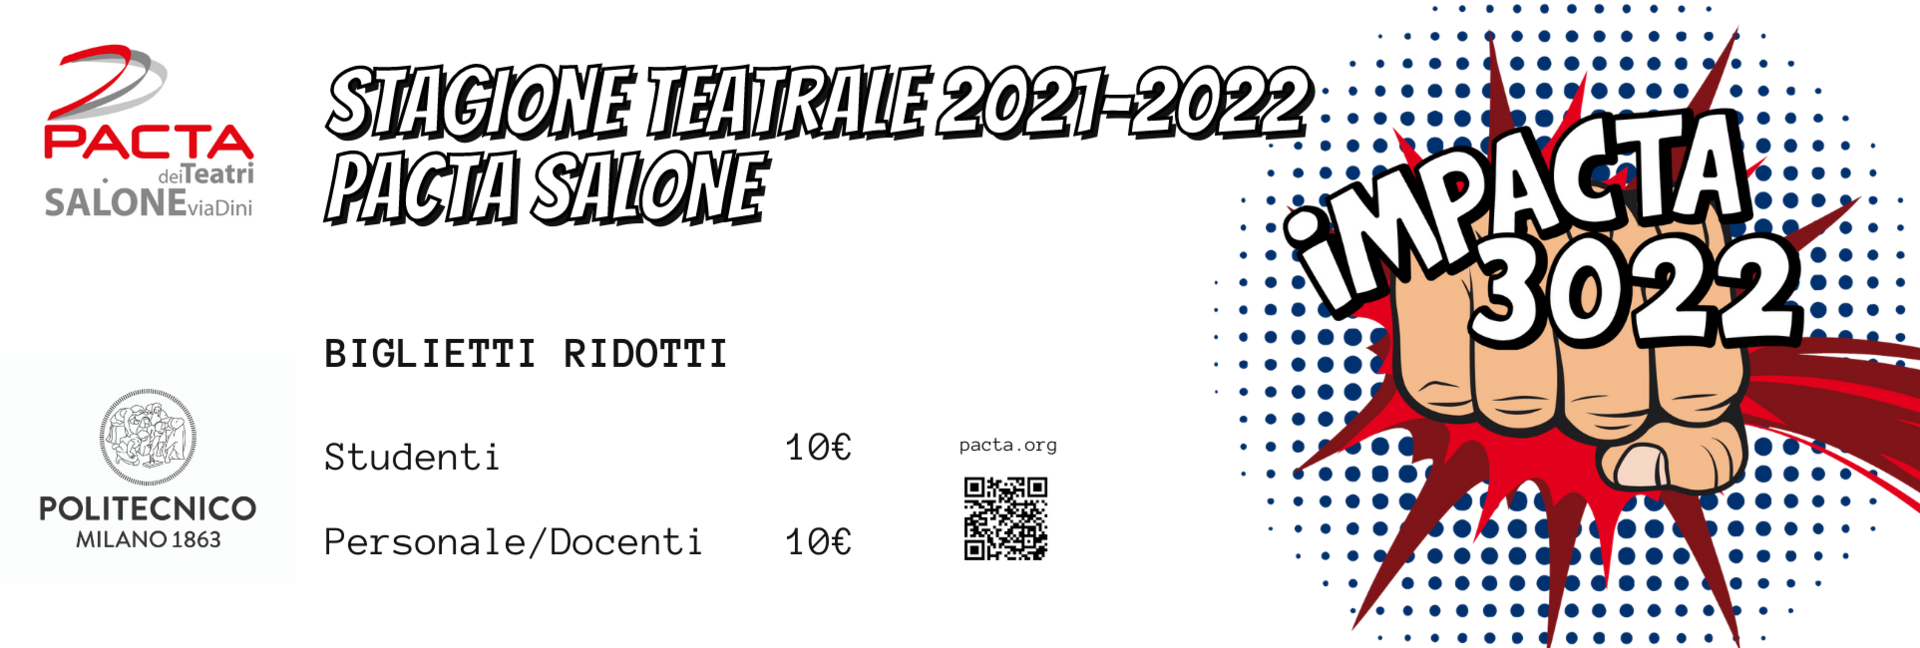 Pacta dei Teatri - Stagione teatrale 2021-2022, Pacta Salone - Biglietti ridotti: studenti 10 €, personale/docenti 10 €